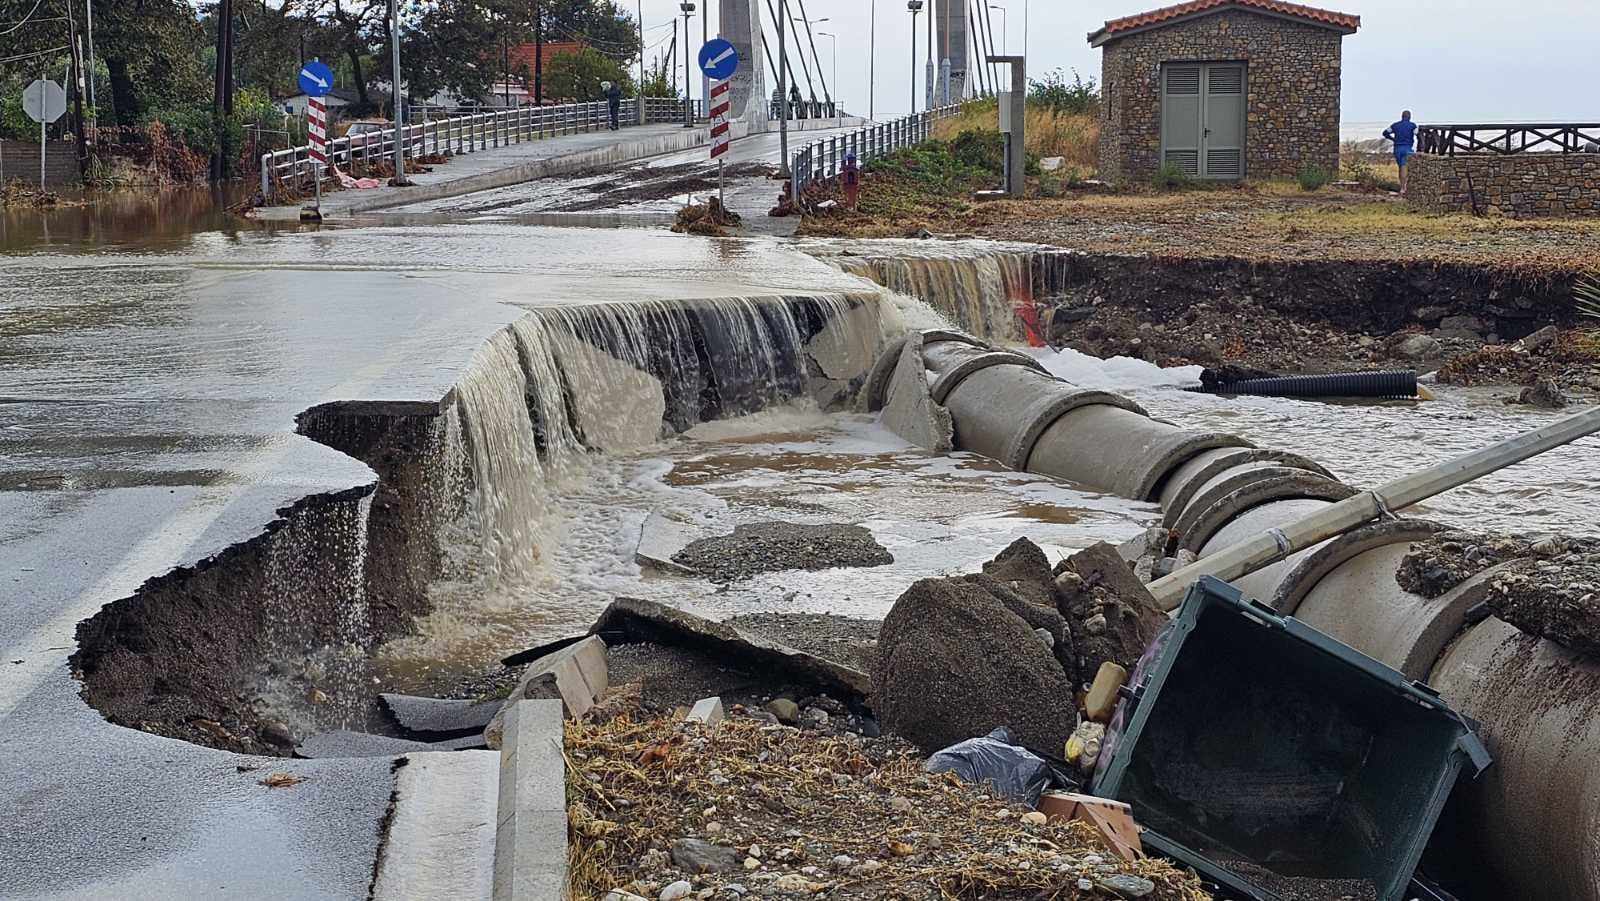 Ισχυρές βροχοπτώσεις στη Θεσσαλία: Ανησυχία για τα παράλια Αγιάς – Αναμένεται ένταση των φαινομένων